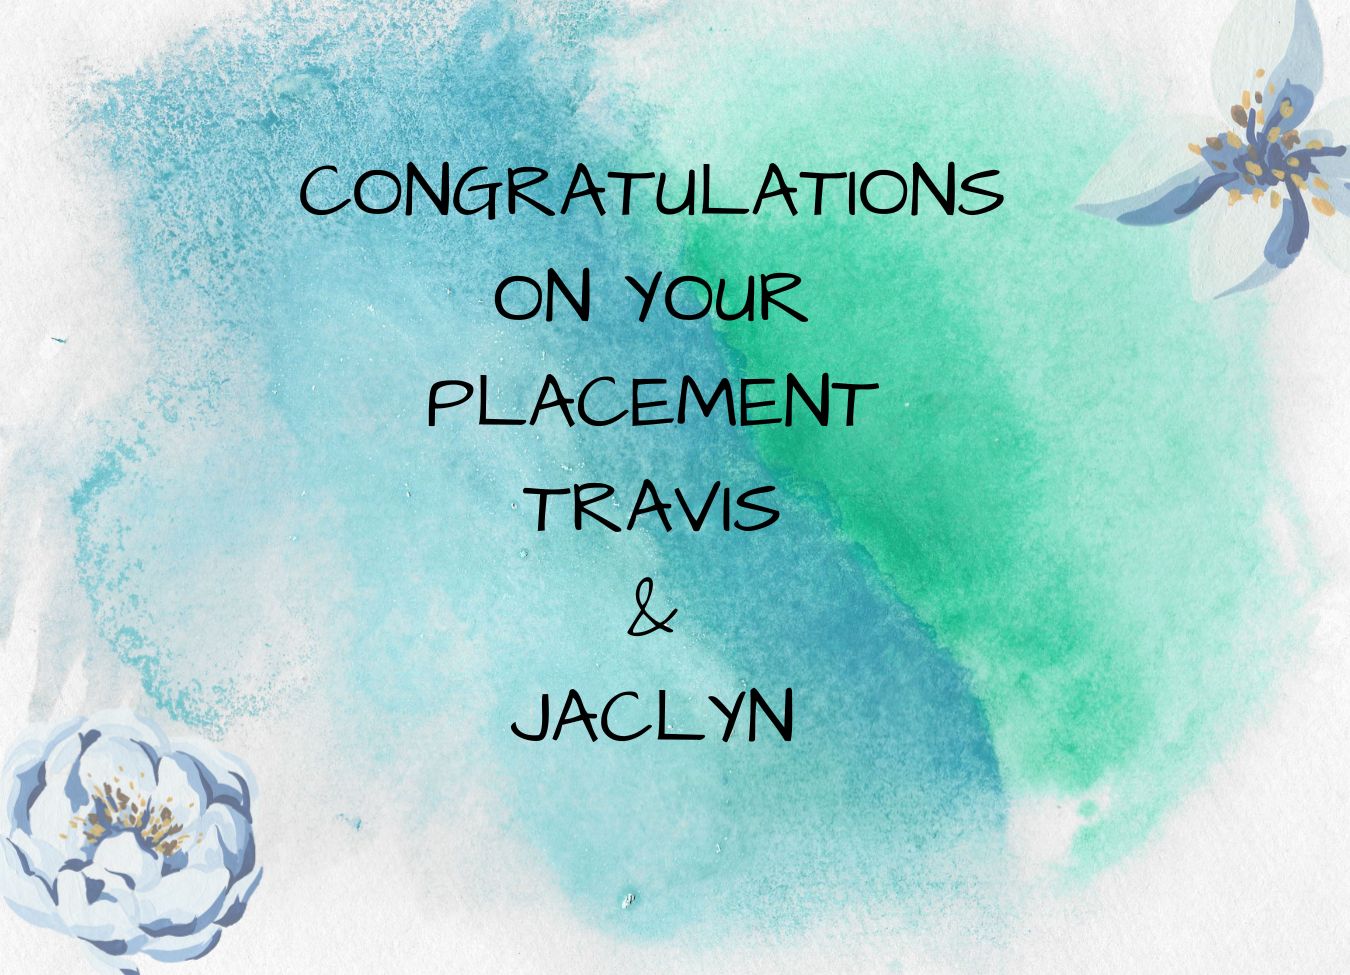 Travis & Jaclyn